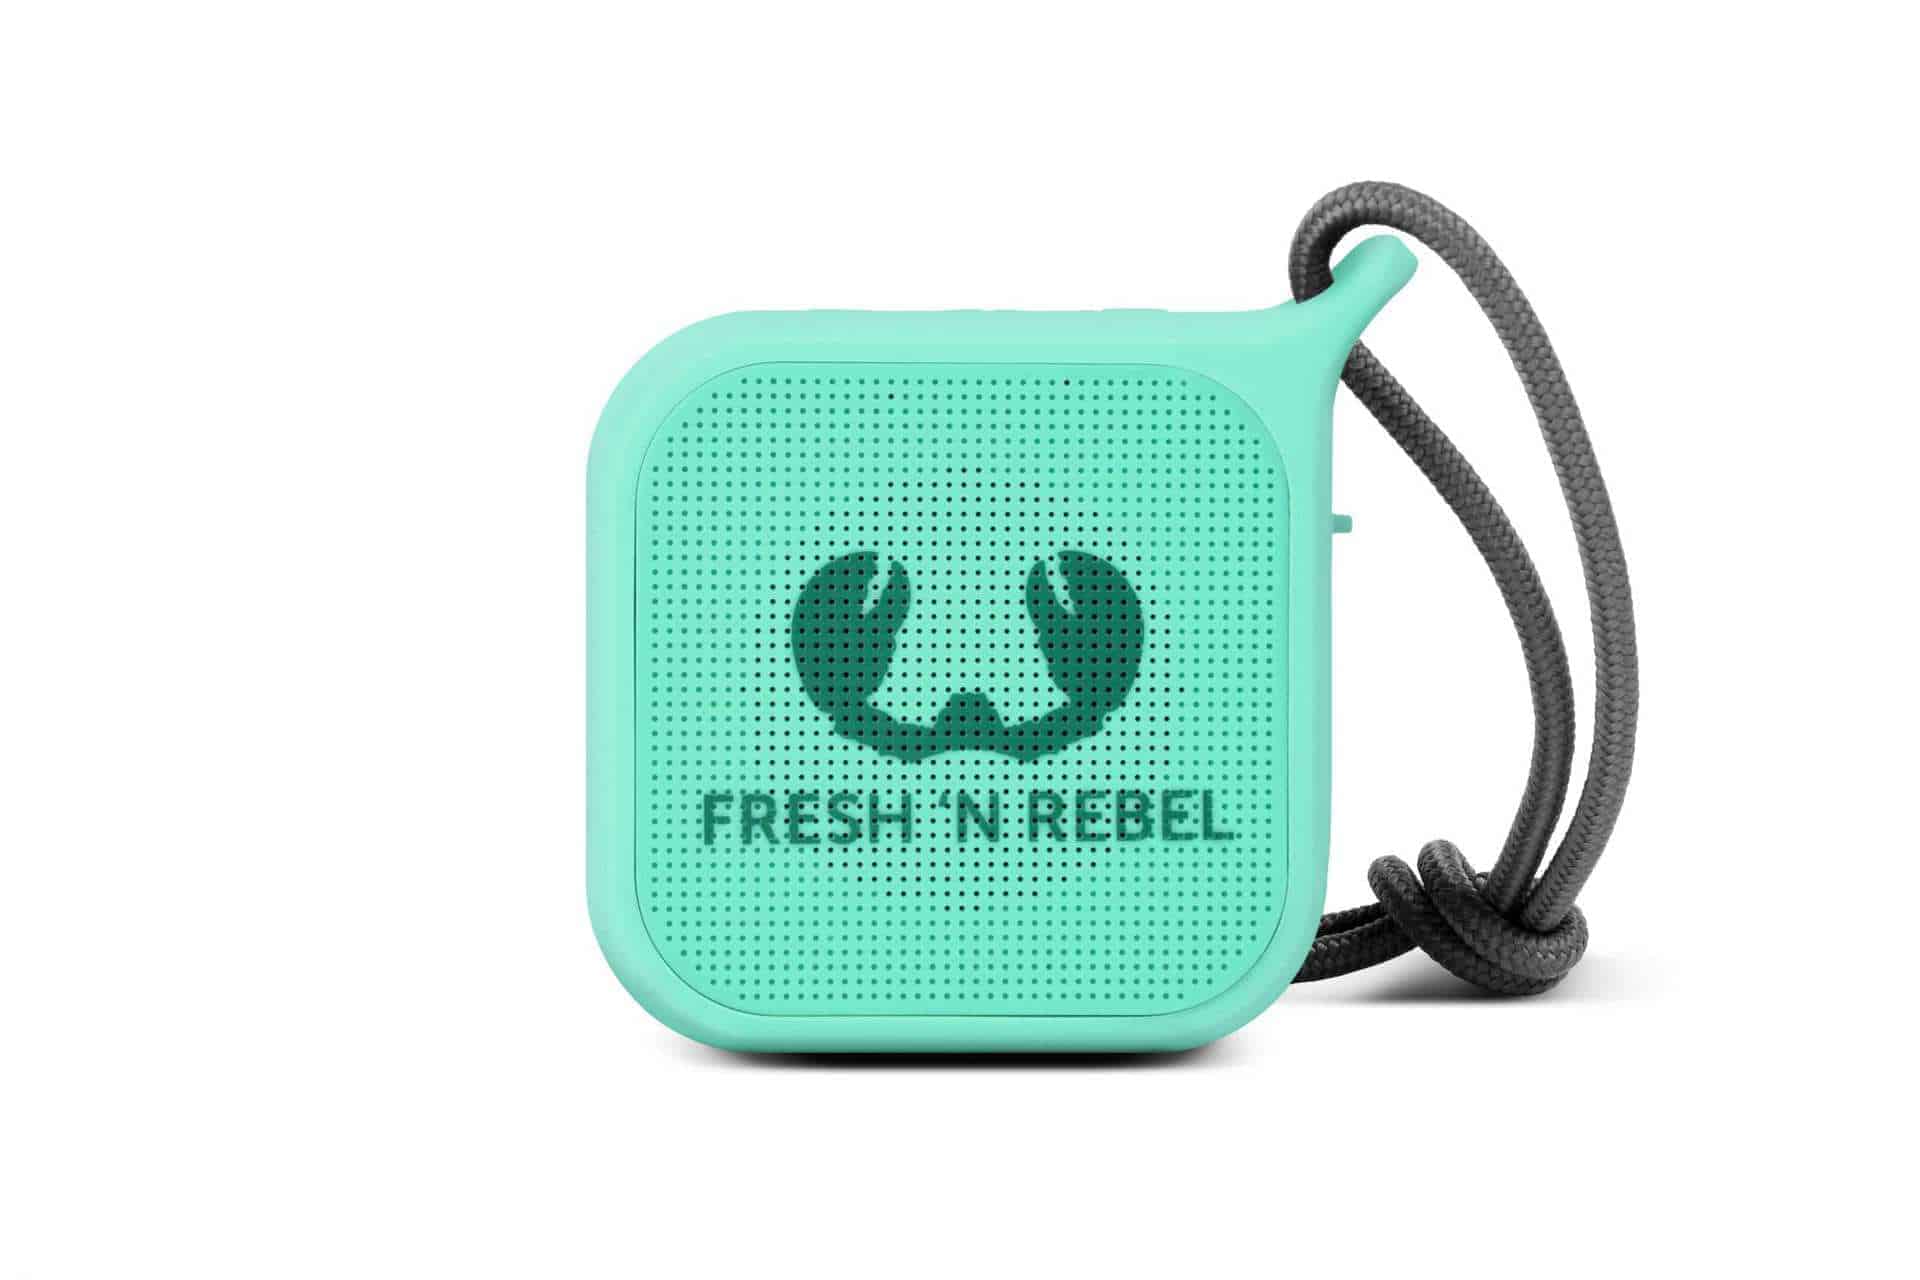 Juego de regalo con altavoz Bluetooth Powerbank Fresh Rebel